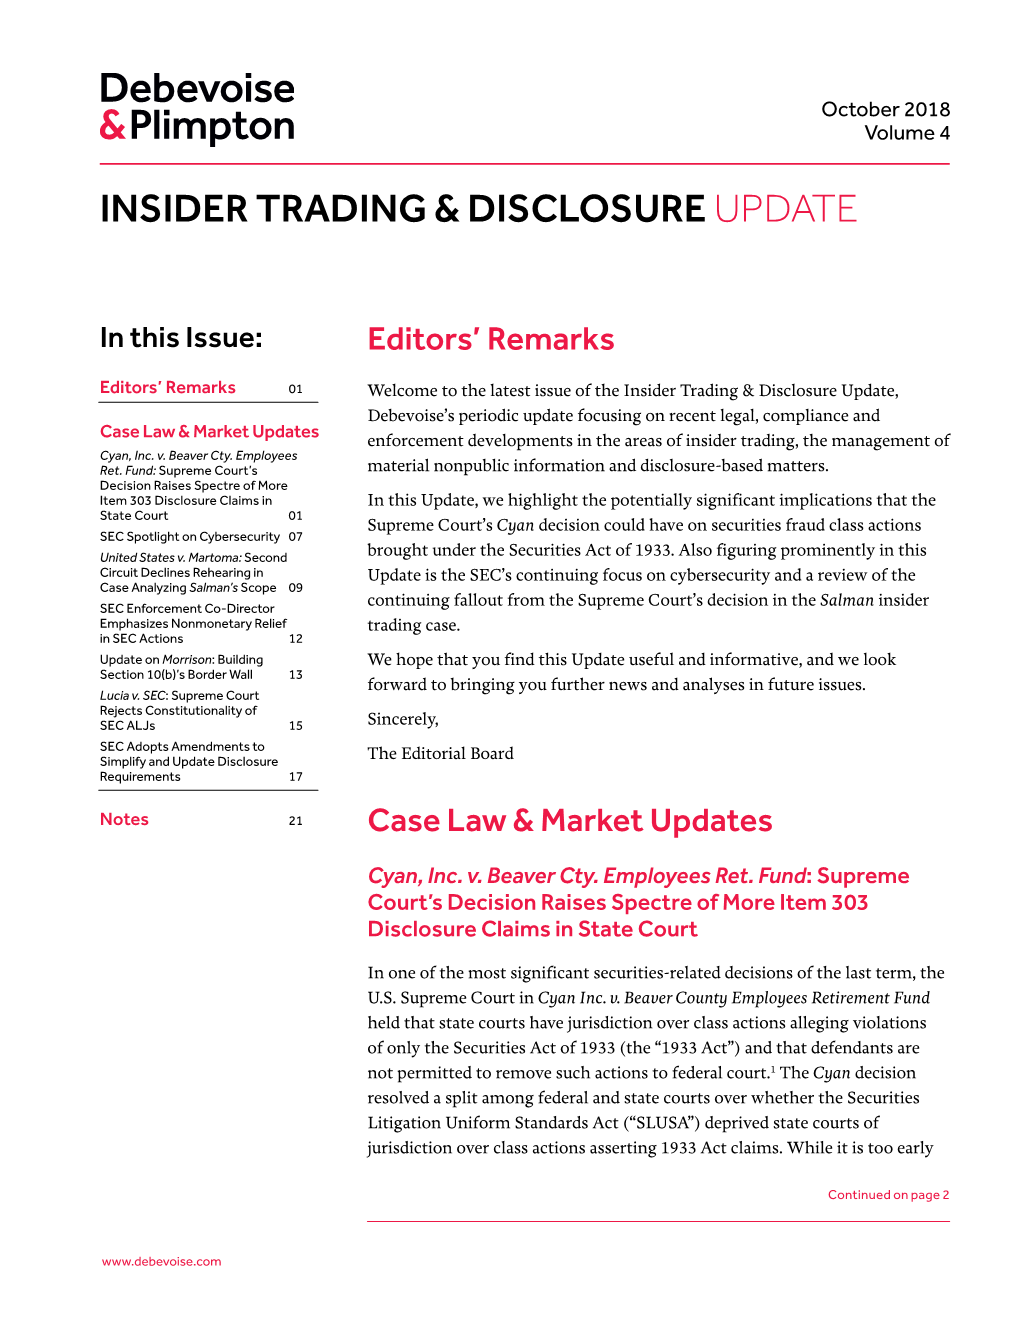 Insider Trading & Disclosureupdate